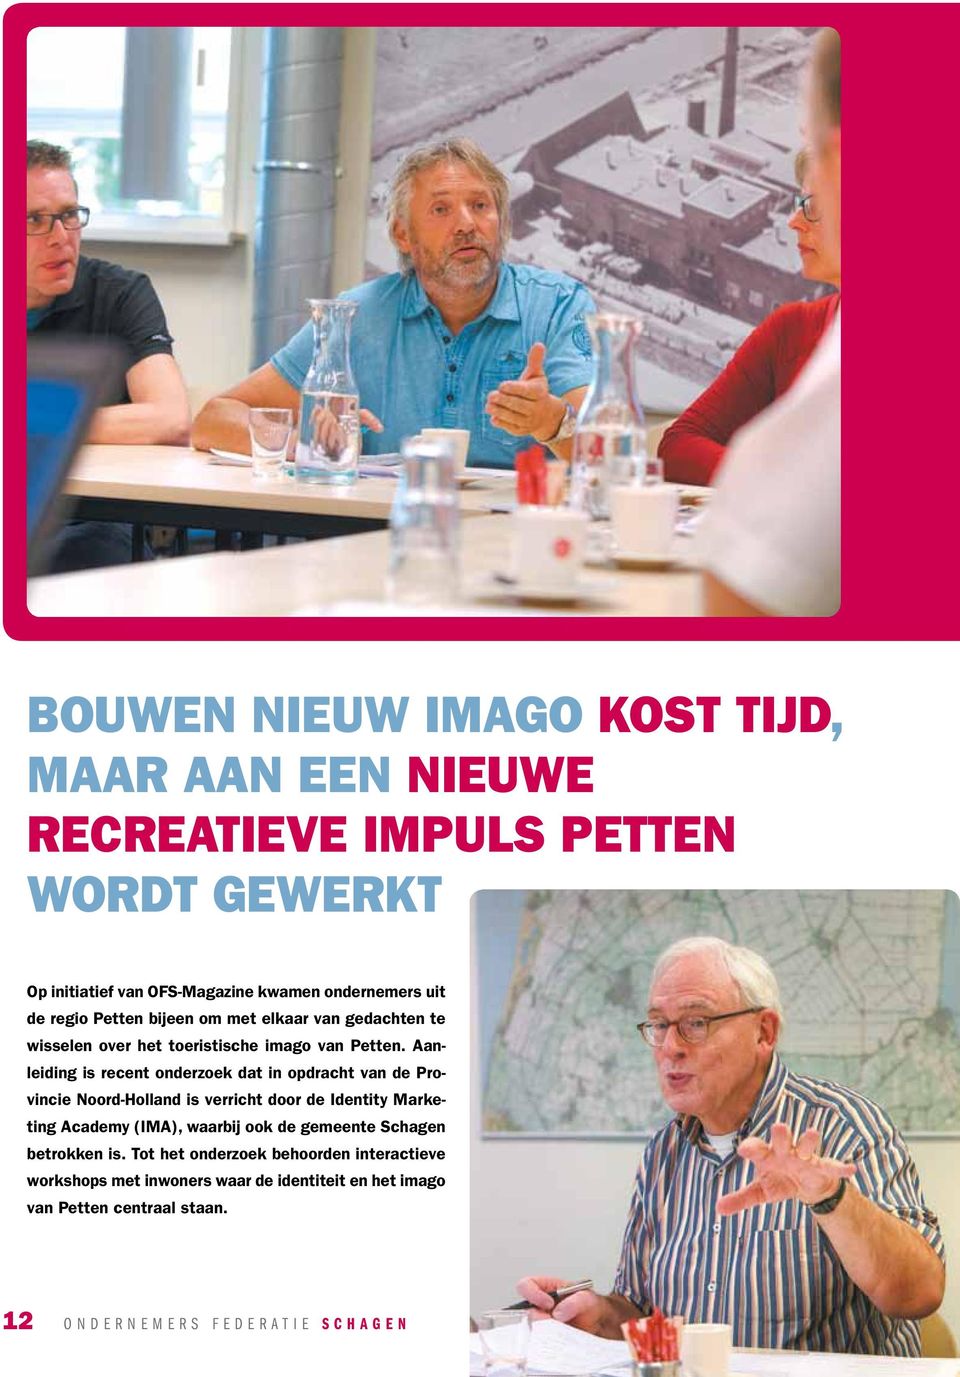 Aanleiding is recent onderzoek dat in opdracht van de Provincie Noord-Holland is verricht door de Identity Marketing Academy (IMA), waarbij ook de